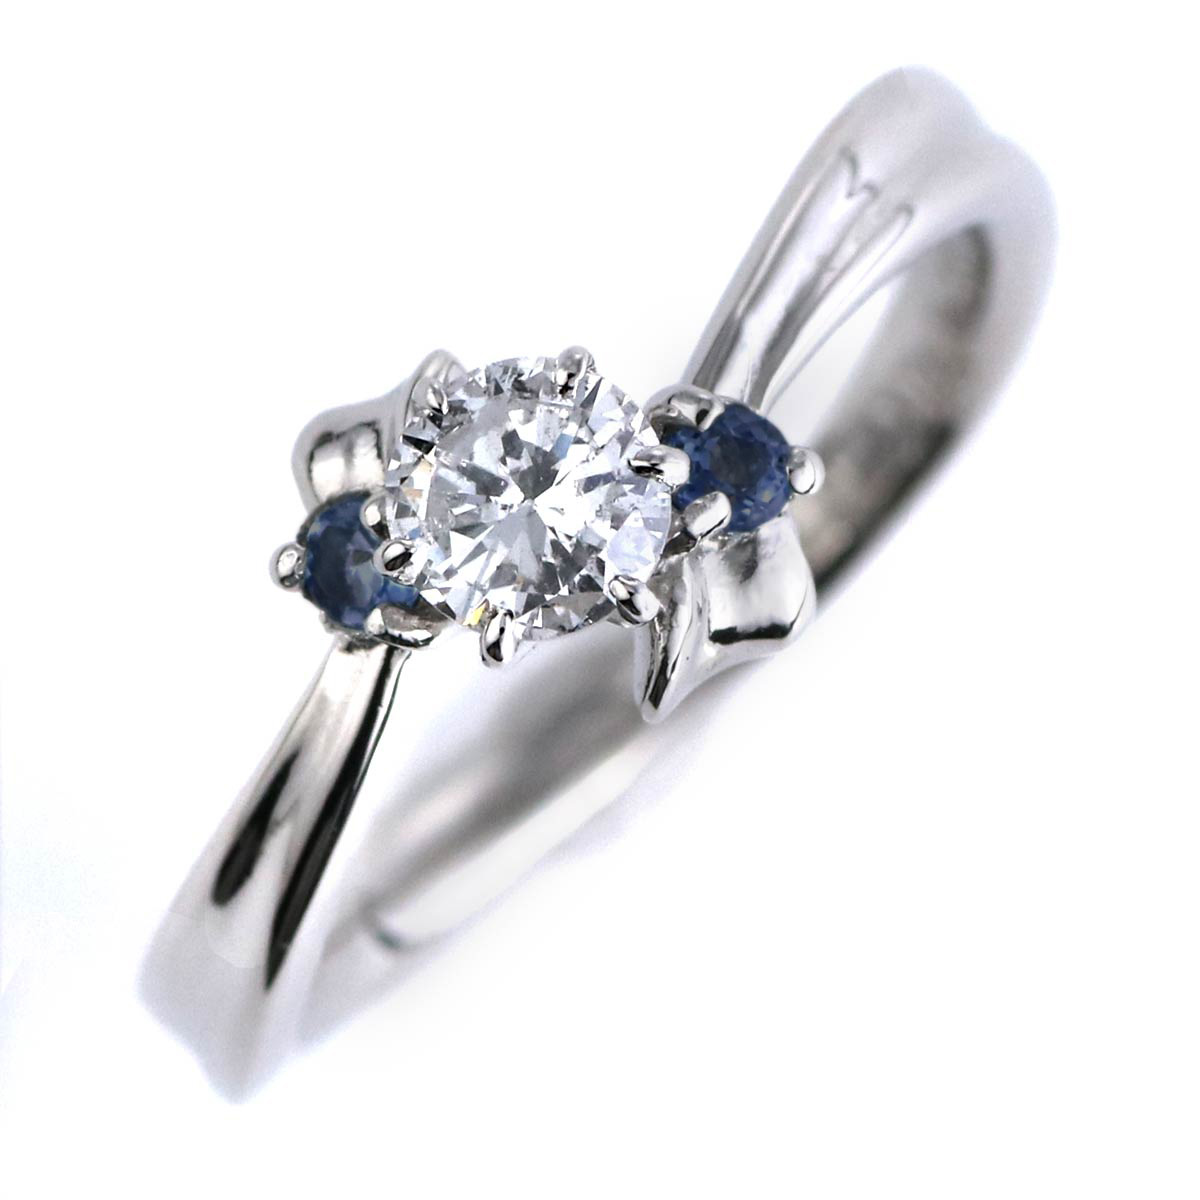 婚約指輪 ダイヤモンド プラチナリング 一粒 大粒 指輪 エンゲージリング 0.4ct プロポーズ用 レディース 人気 ダイヤ 刻印無料 9月 誕生石 サファイア